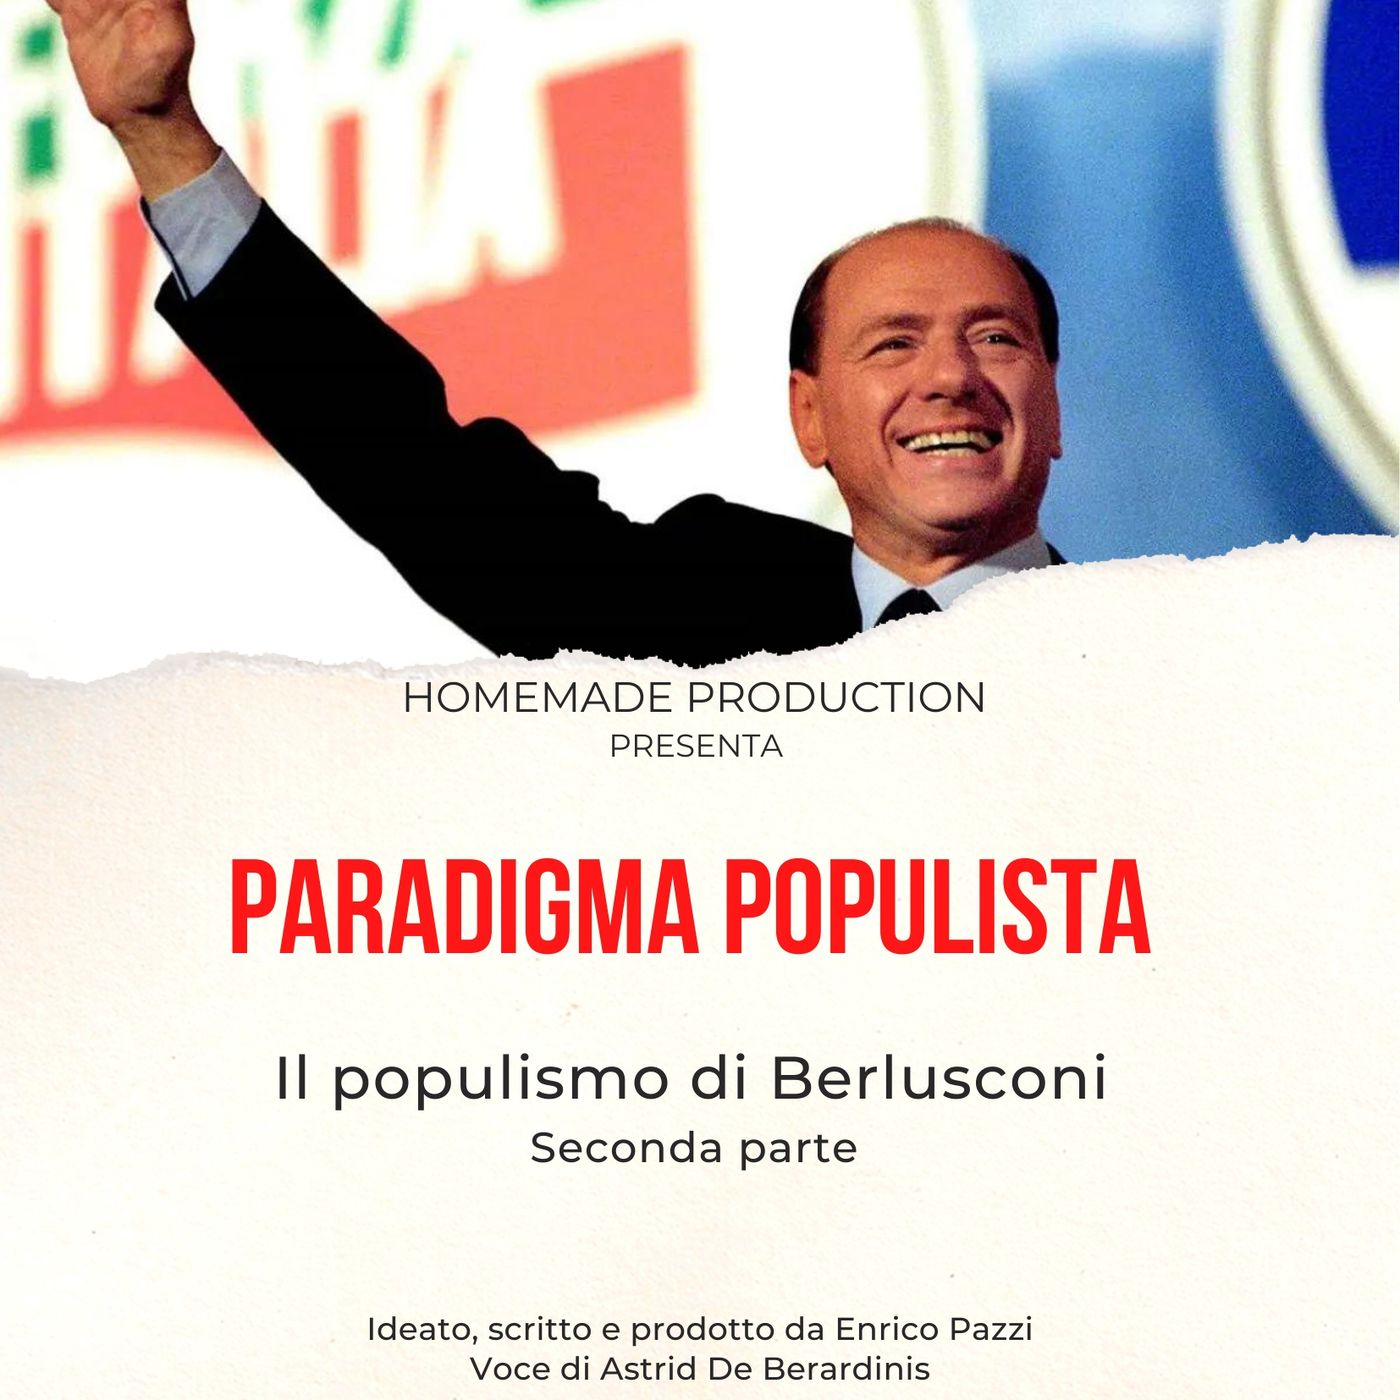 Il populismo di Silvio Berlusconi - Seconda parte